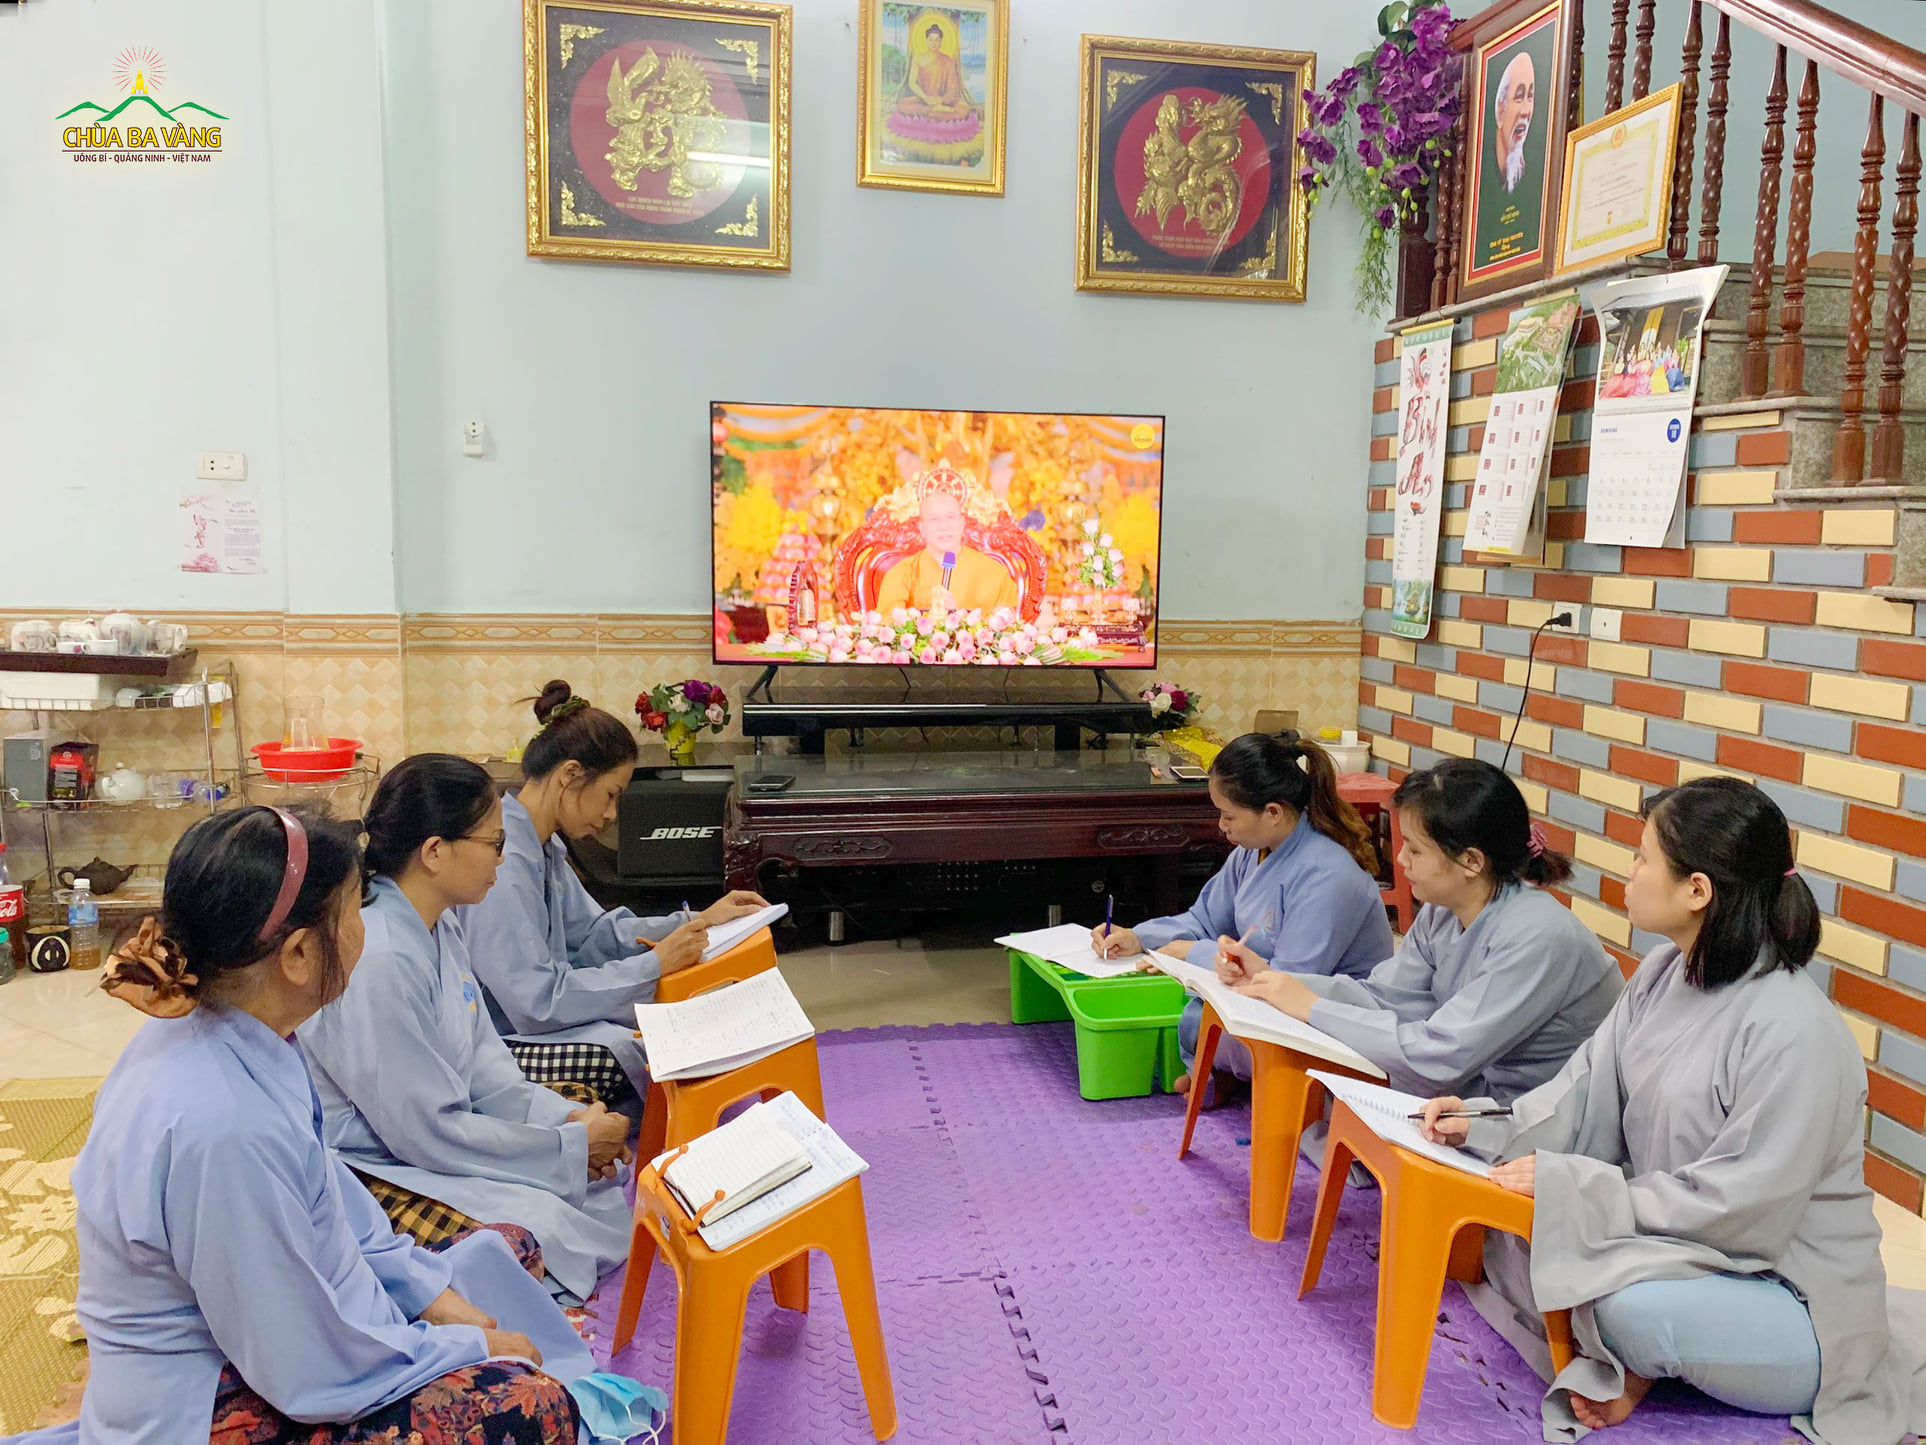 Tại những vùng an toàn về dịсн вệnн, Phật tử tập trung thành nhóm nhỏ để tham gia học Pháp trực tuyến